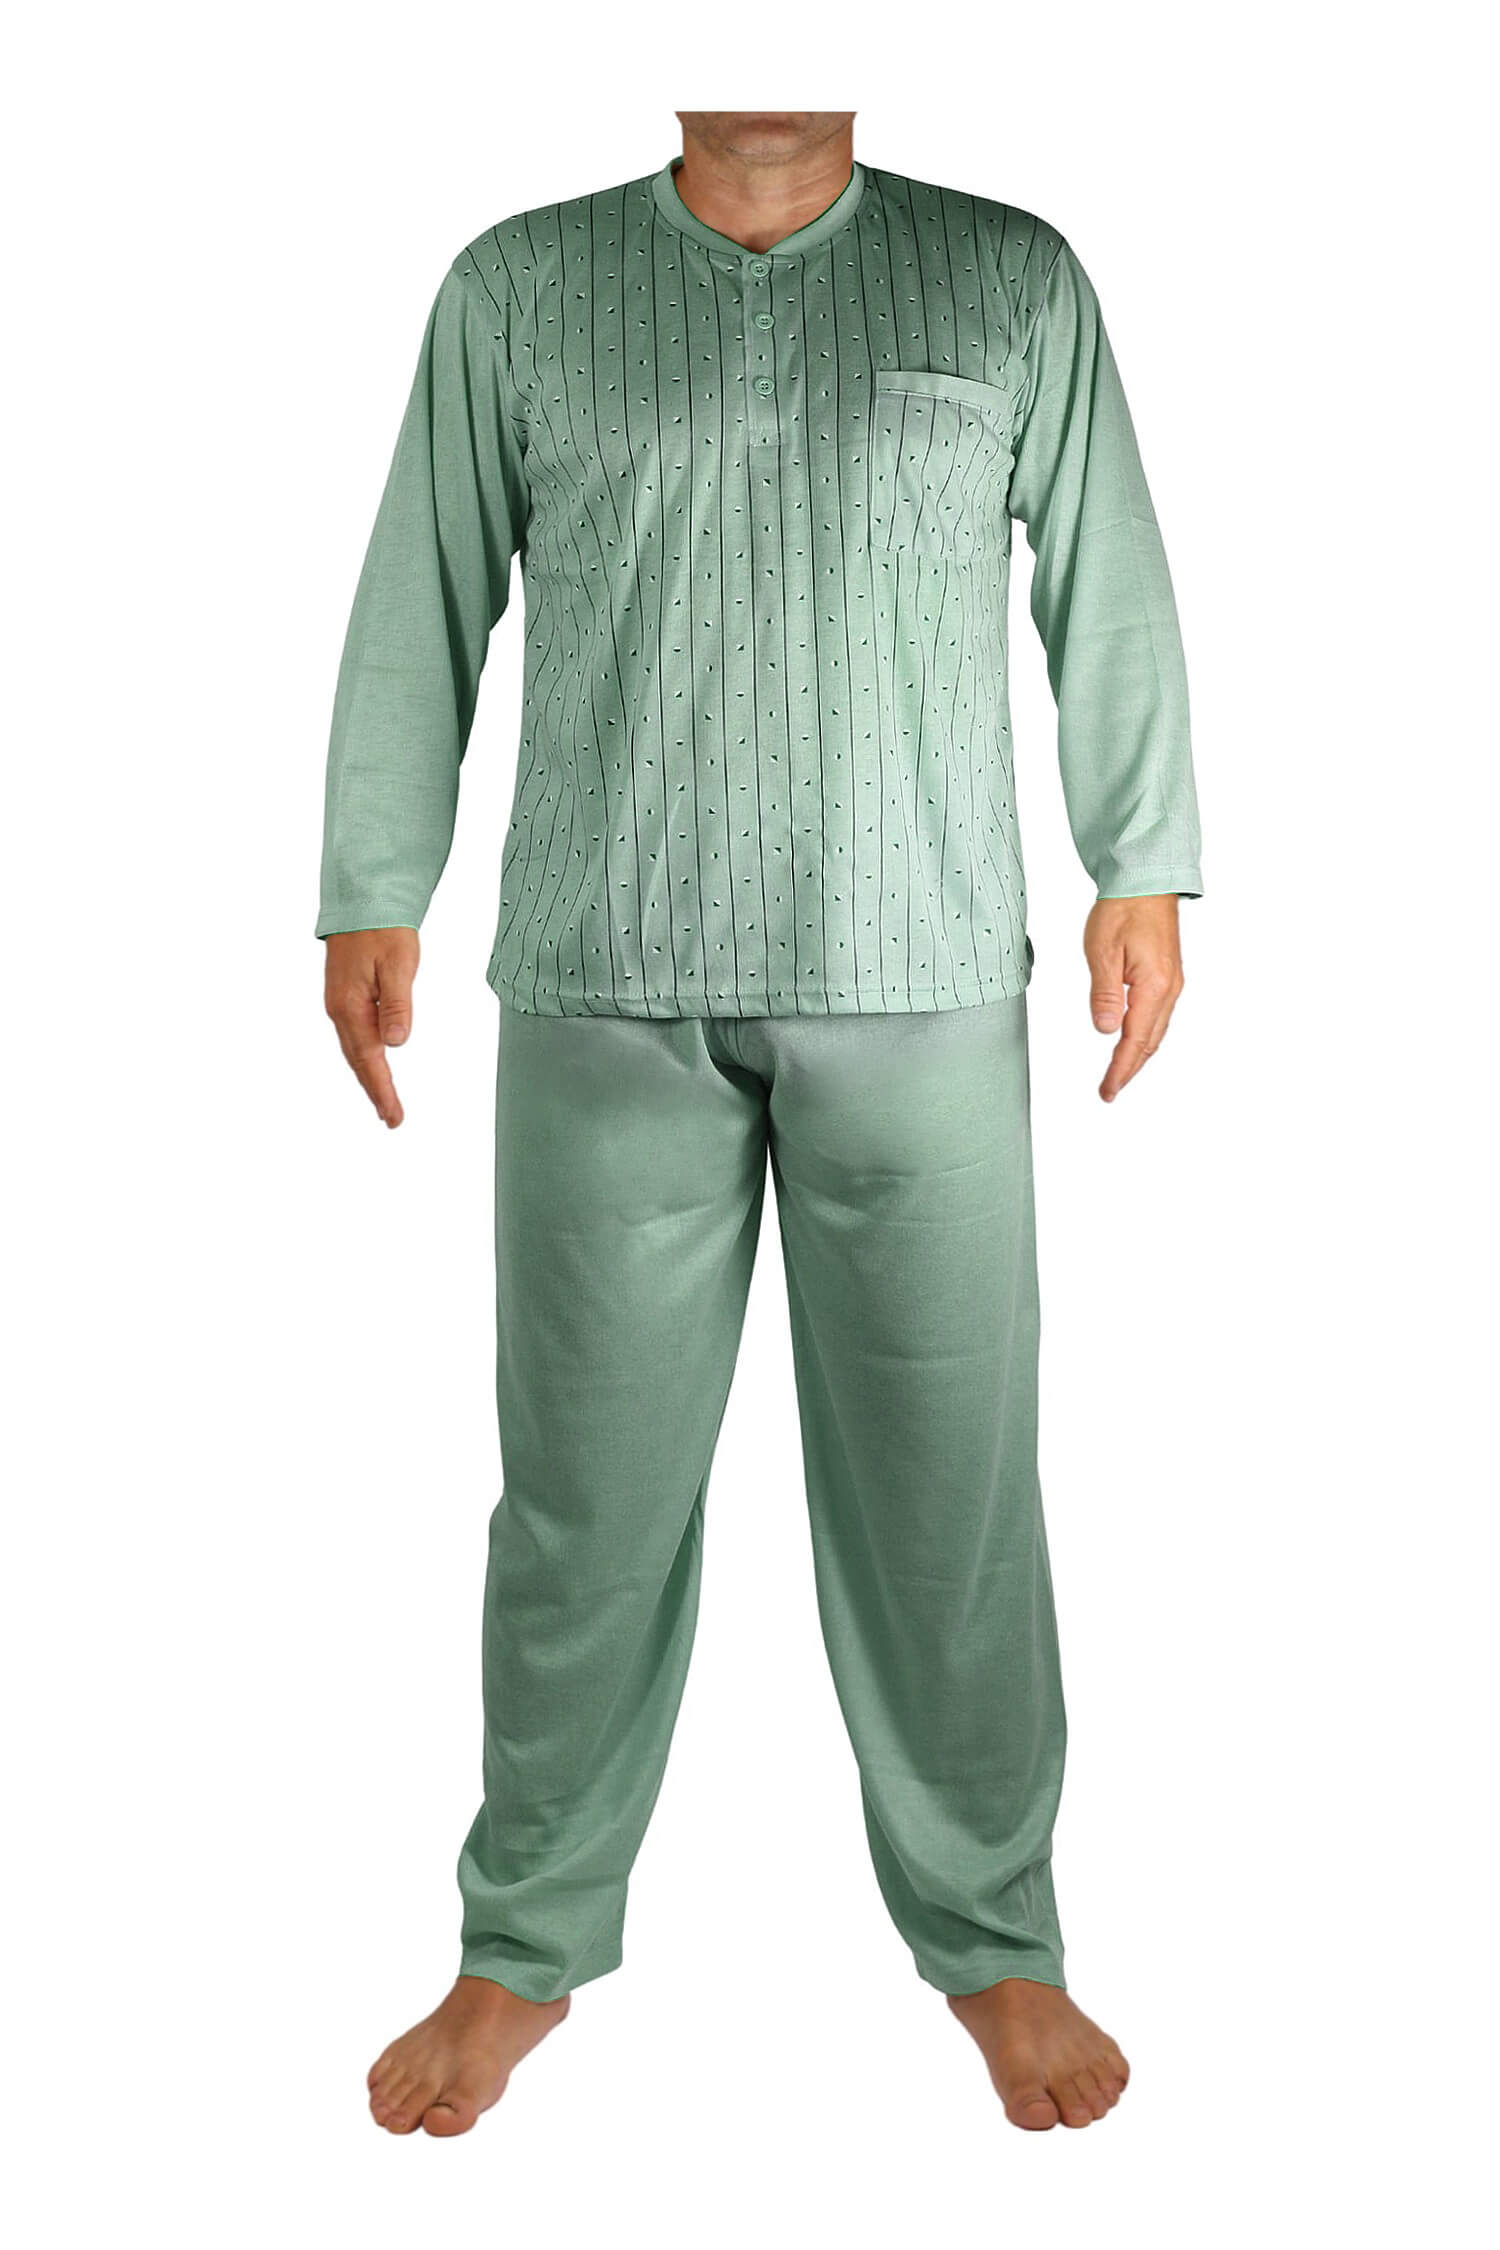 Ludvík pyžamo pánské dlouhé V1974 XL zelená